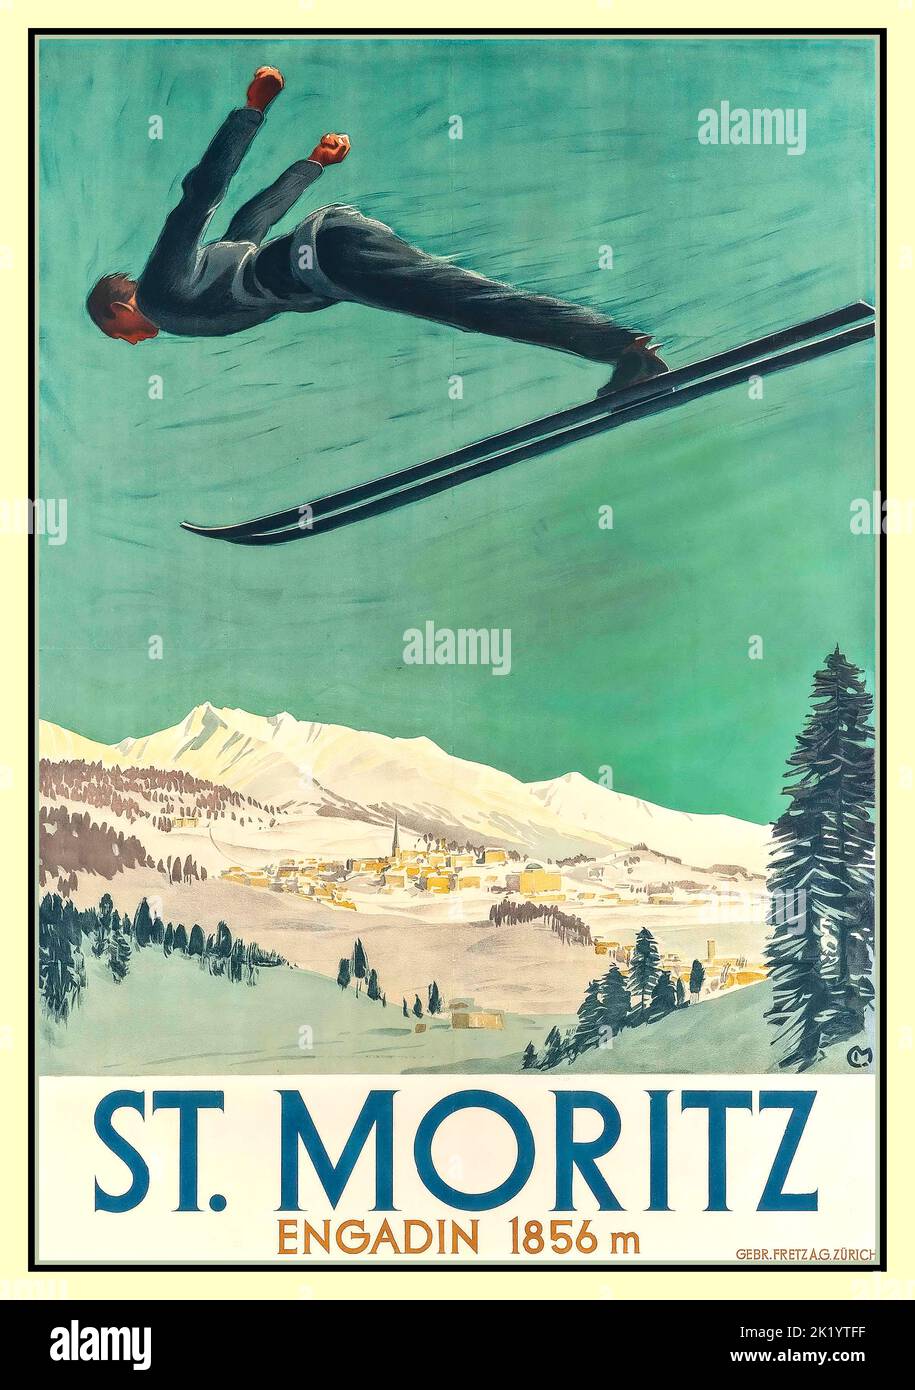 ST. MORITZ SKI JUMP VINTAGE 1900s sports d'hiver ski jump affiche de Carl Moos (1878-1959) lithographie de St Moritz, vallée de l'Engadine au 1856M Suisse Banque D'Images